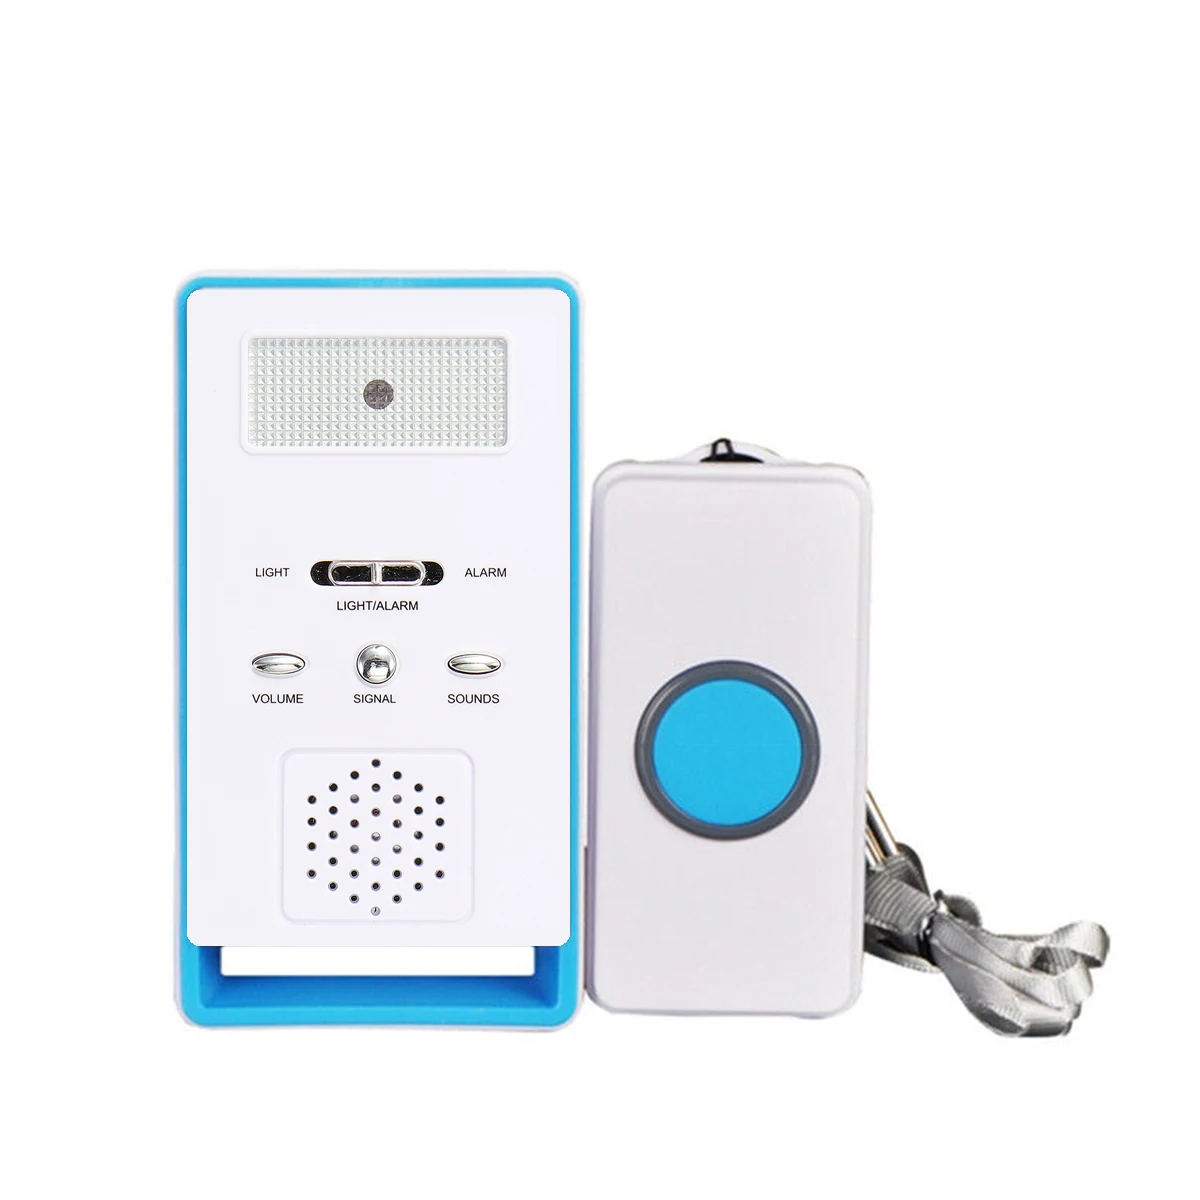 Беспроводной SOS аварийный набор аварийной сигнализации комплекты для пожилых людей помощь пейджер Домашняя безопасность колокольчик тревожная кнопка устройство для вызова инвалидов - Цвет: Синий